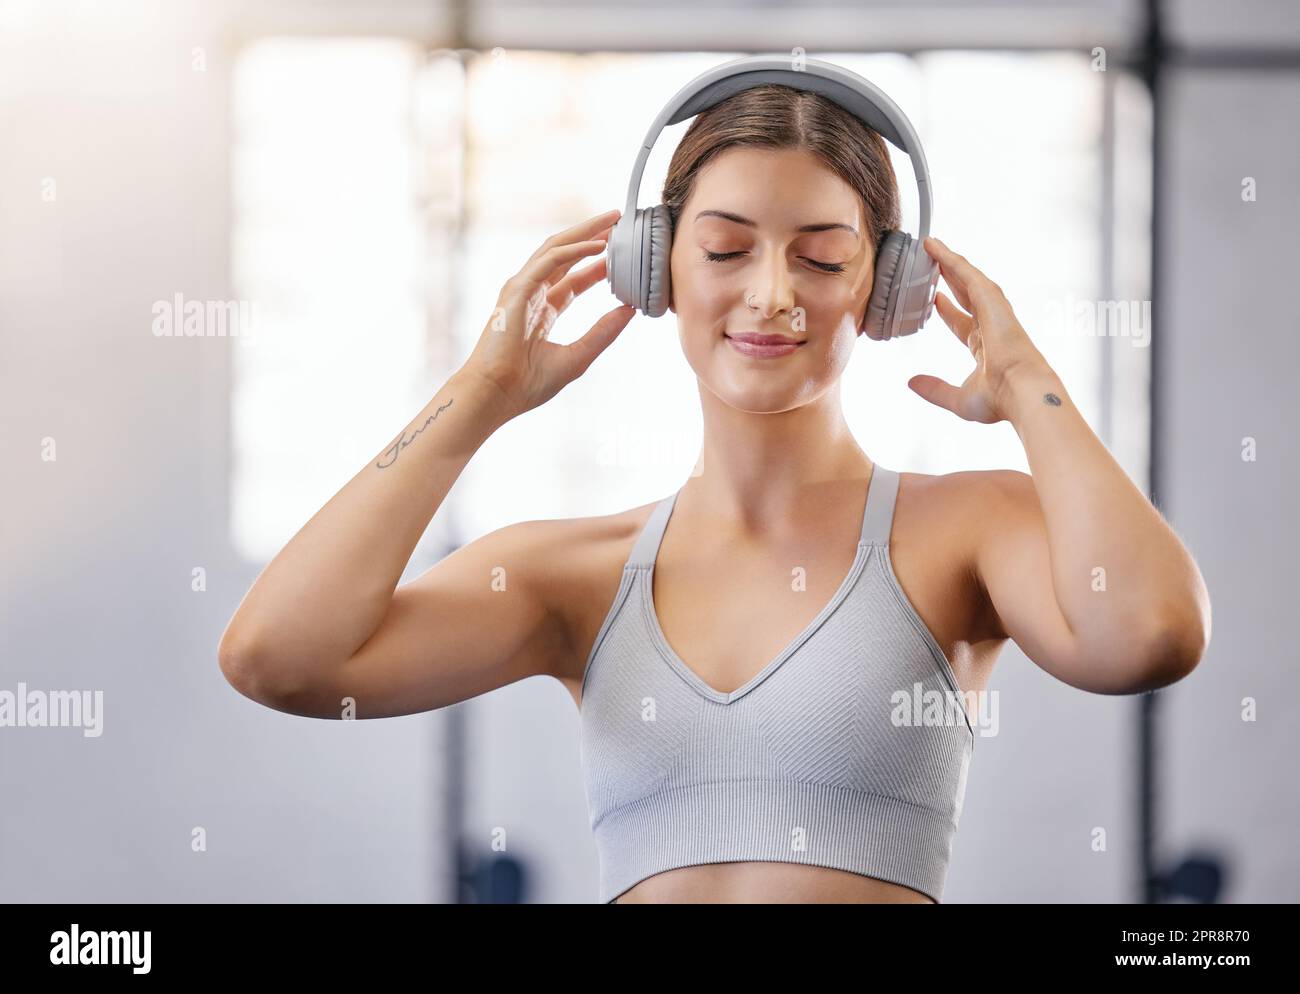 Eine aktive junge weiße Frau hört entspannte Musik mit Kopfhörern, während sie eine Pause vom Training im Fitnessstudio macht. Sportlerinnen bleiben während ihres Workouts in einem Fitnesscenter mit ruhiger Musik motiviert Stockfoto